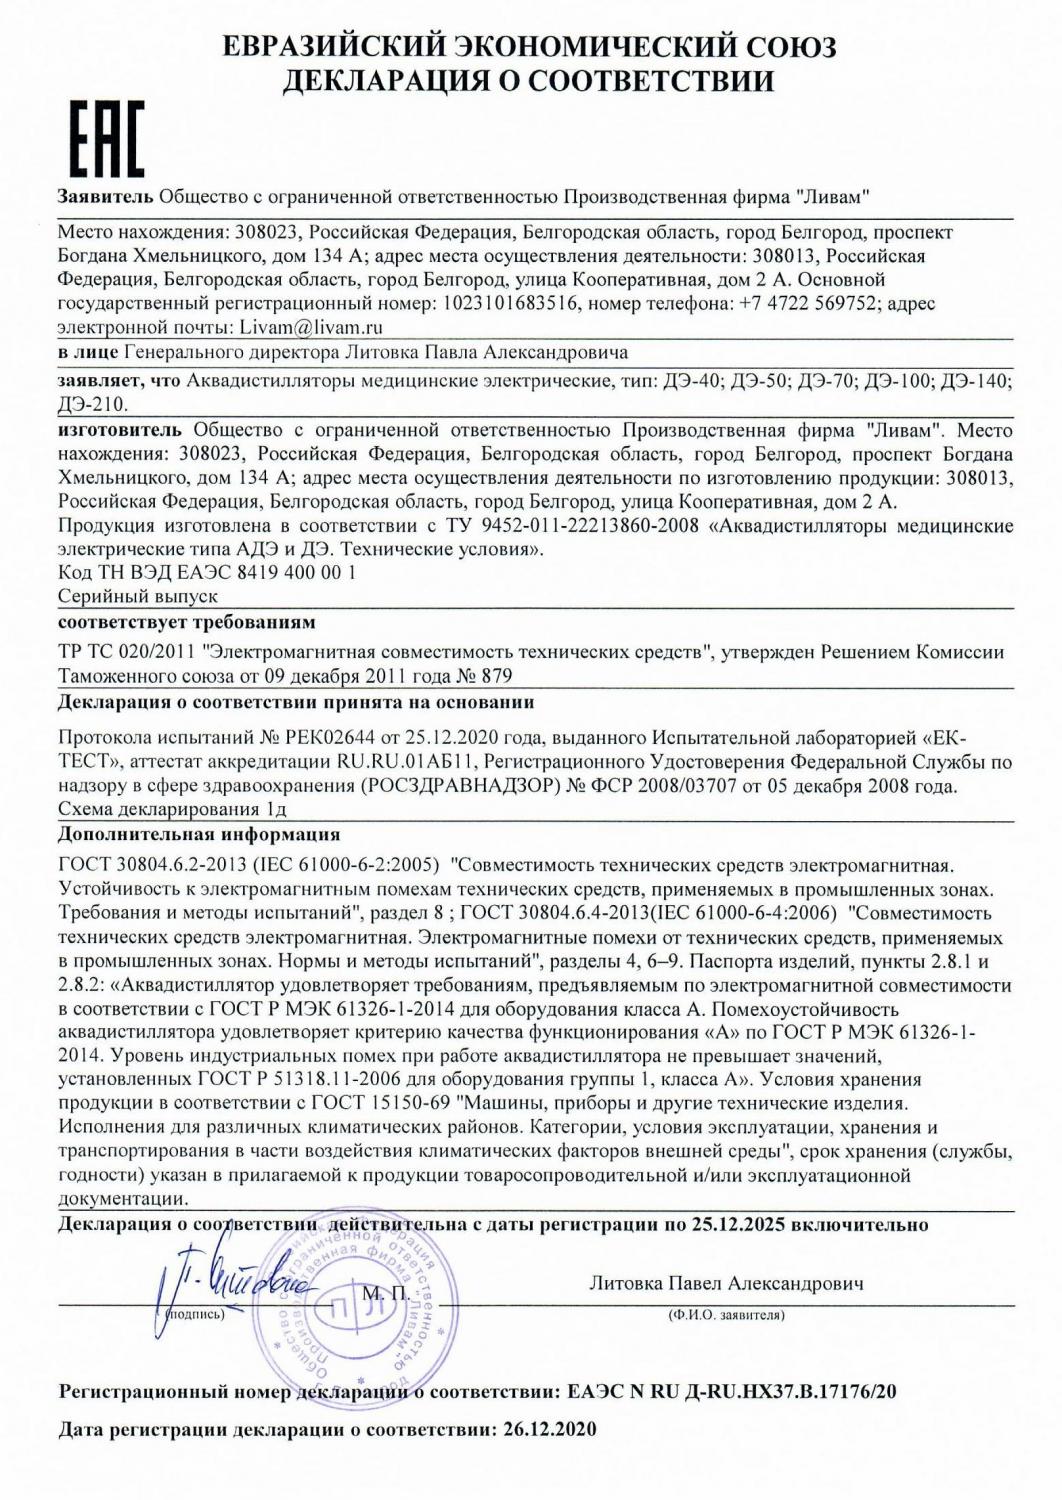 Декларация соответствия на ДЭ ТР ТС 020-2011 Электромагнитная совместимость